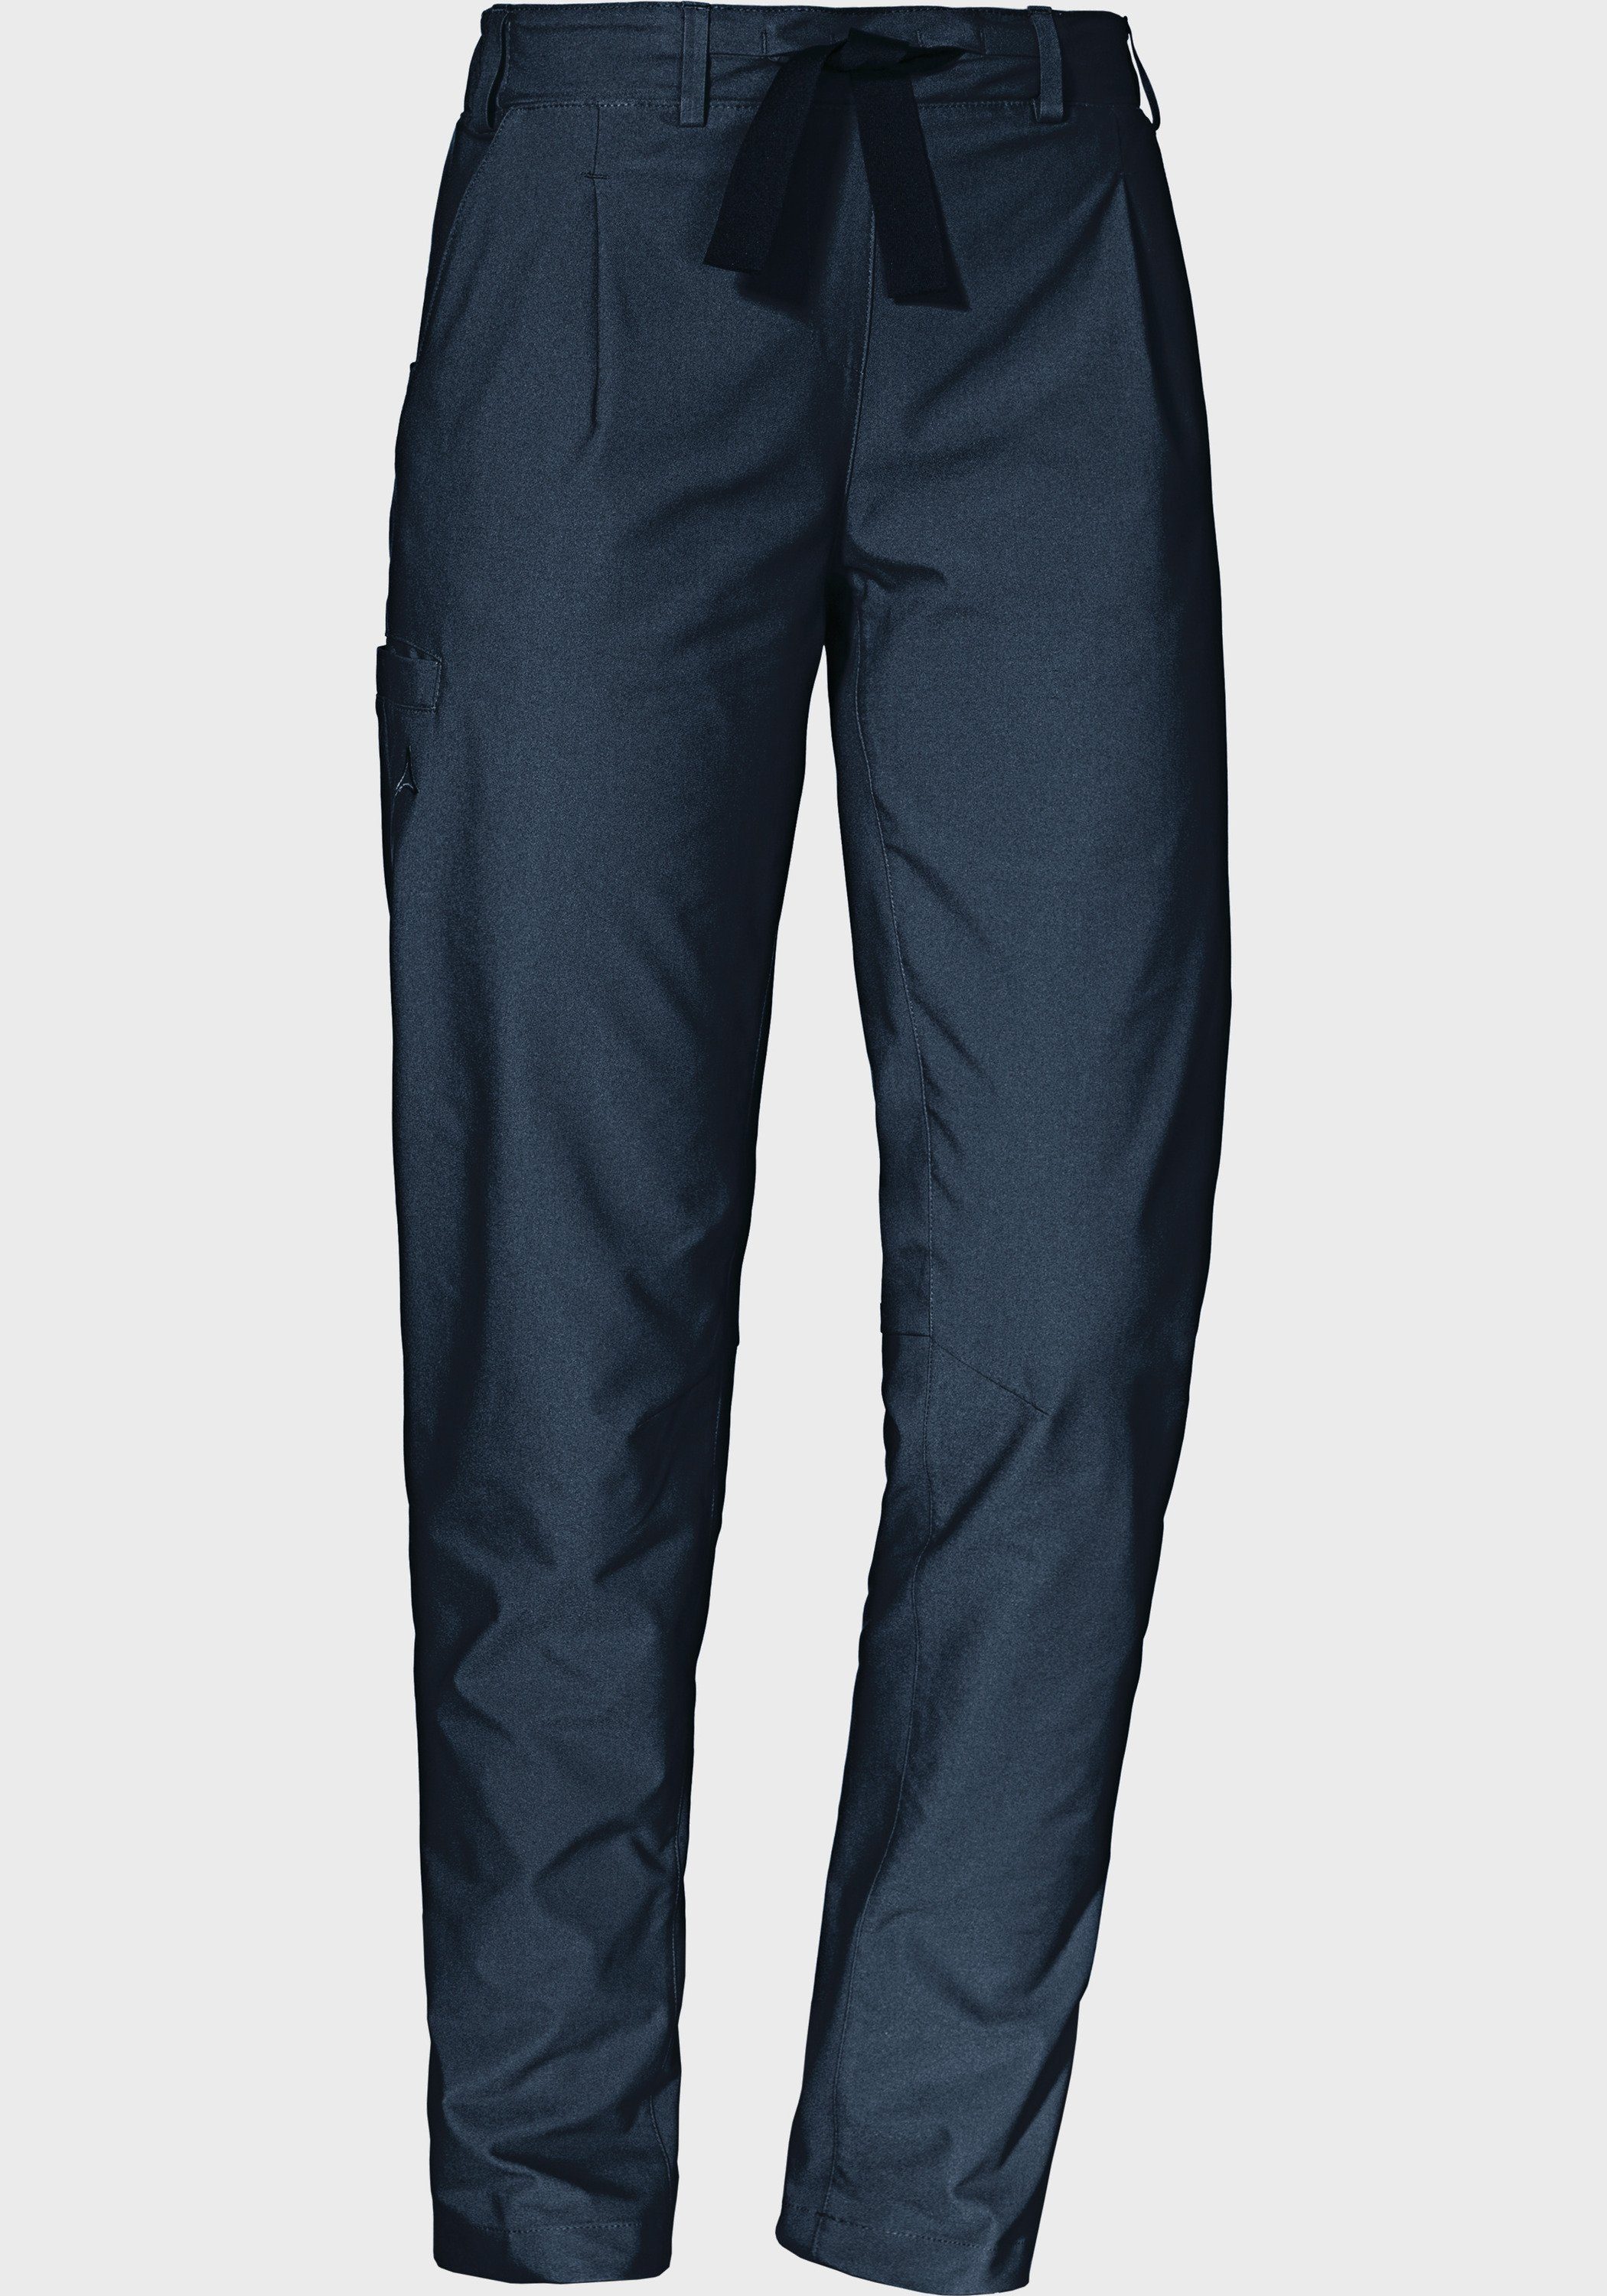 [Besonderheit, Qualitätsprodukte] L blau Pants Outdoorhose Schöffel Oaktree